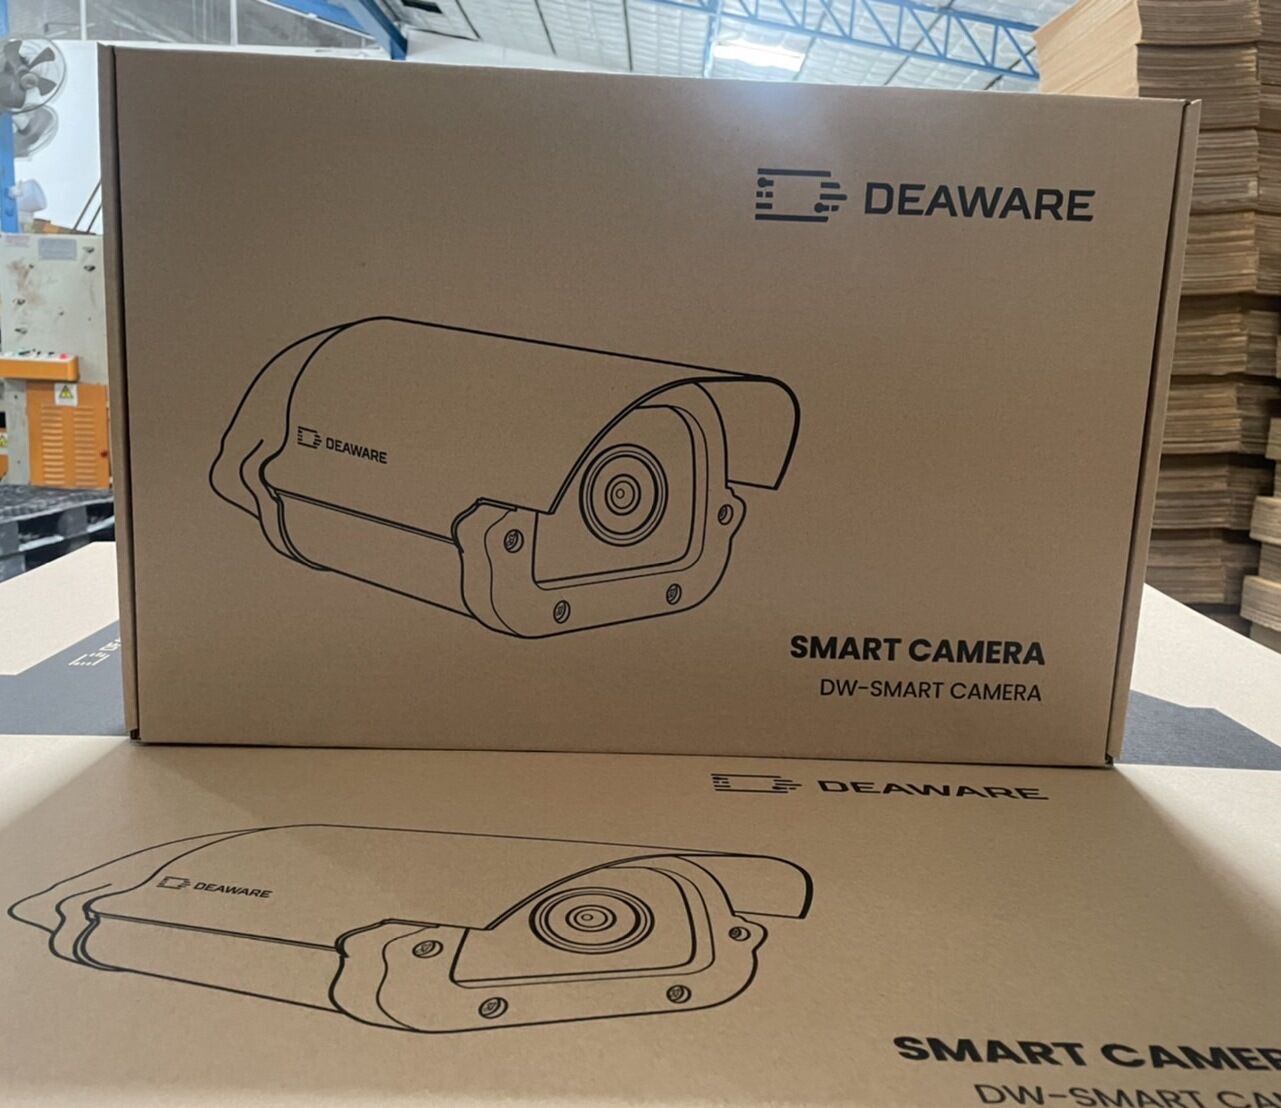 กล่องใส่กล้องวงจรปิดCCTV  BRAND DEAWAREรูปแบบกล่องไดคัทหูช้าง+ซัพพอร์ตบล็อคขนาดกล่อง 35.5x54.8x12.3 cm